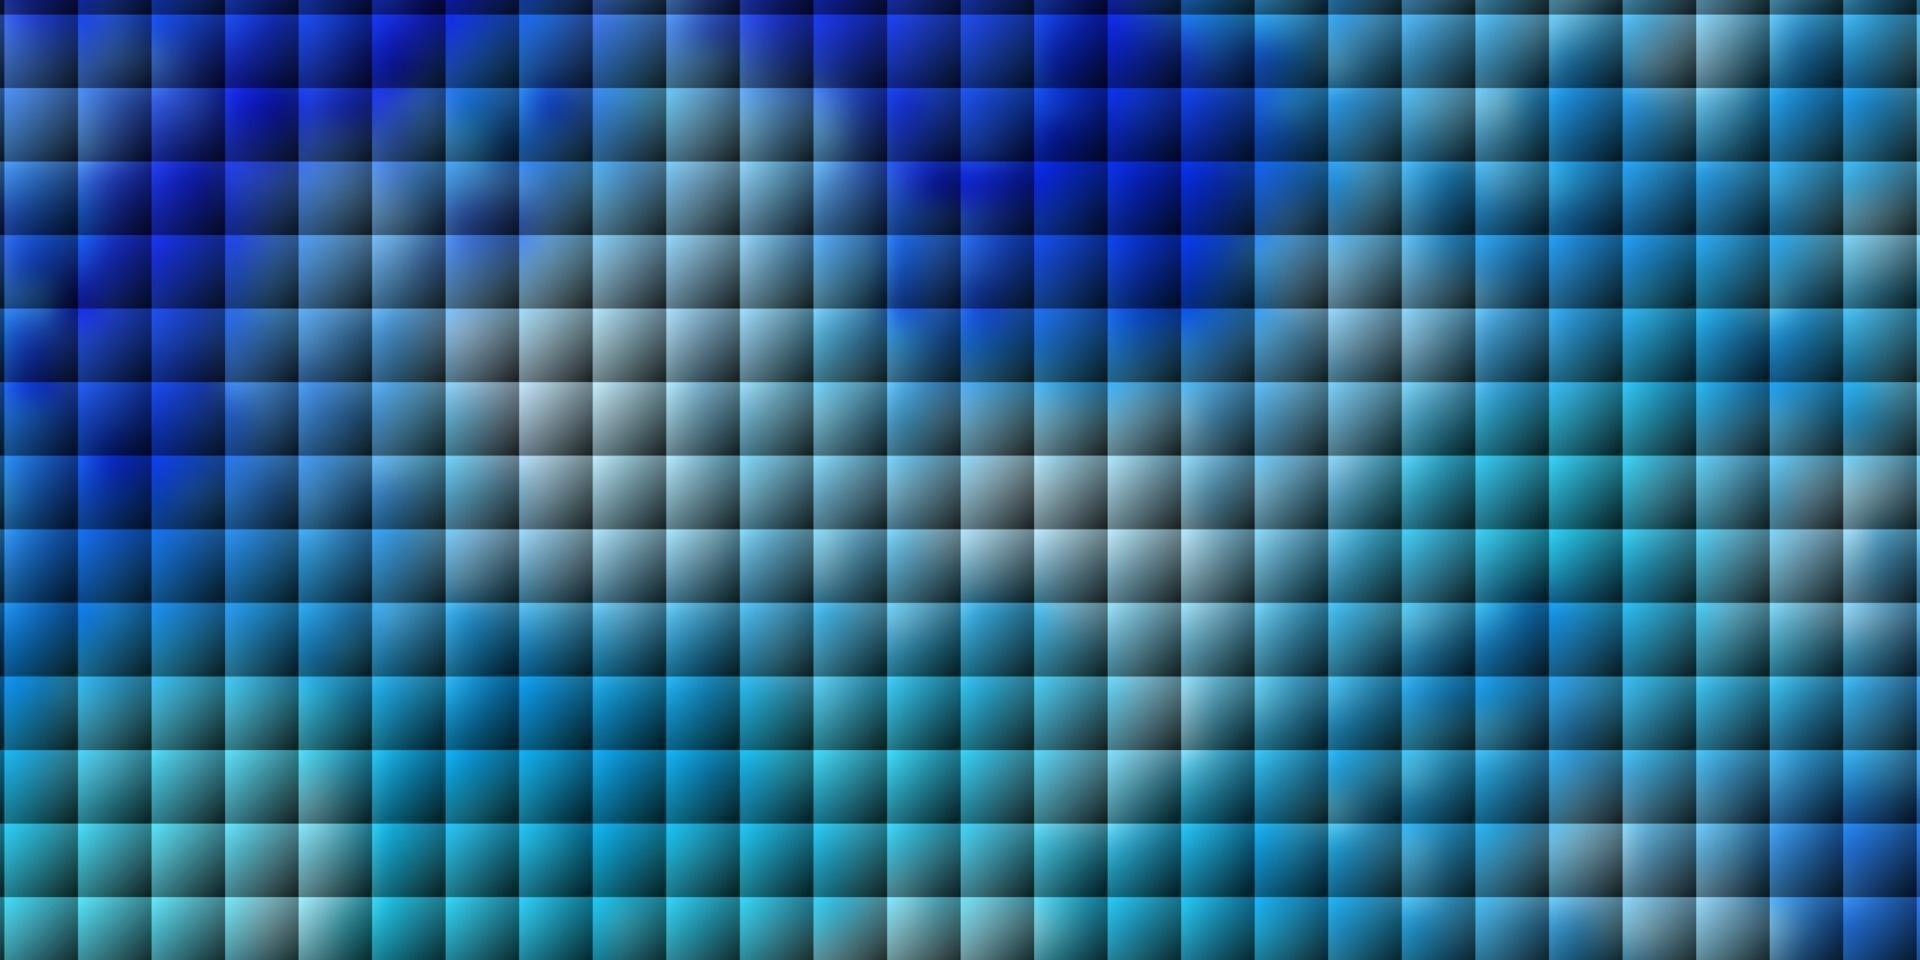 textura de vector azul claro en estilo rectangular.